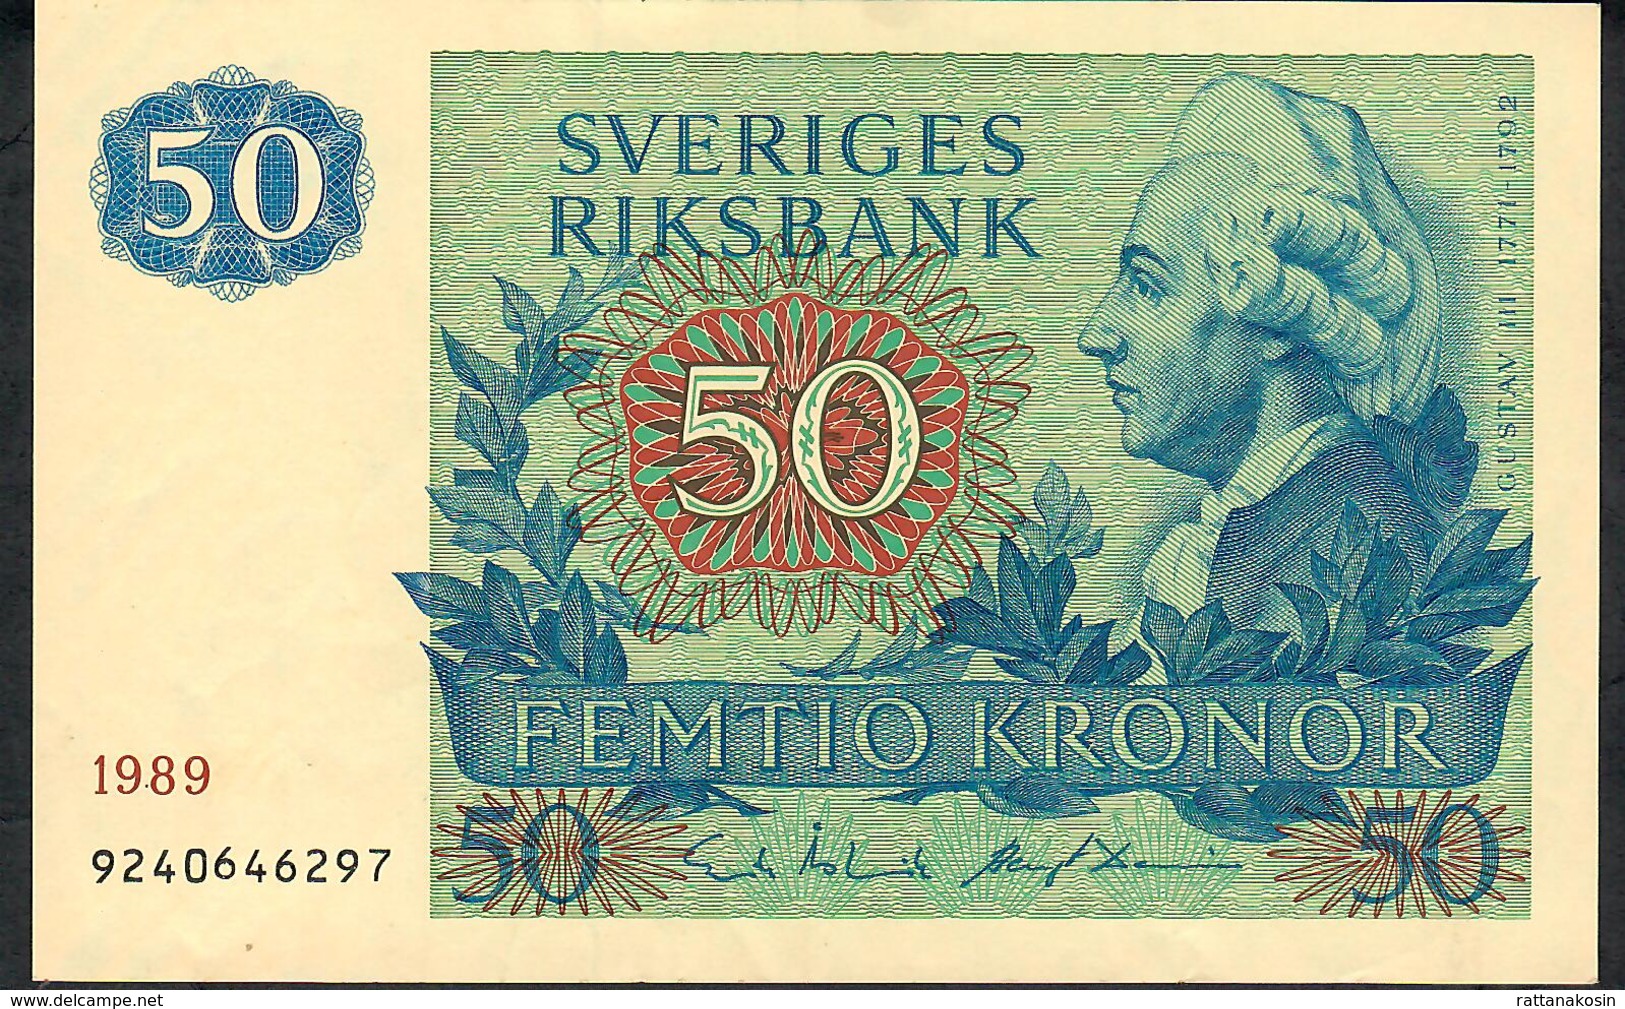 SWEDEN P53d 50 KRONOR 1989 #9240646297  XF - Suède